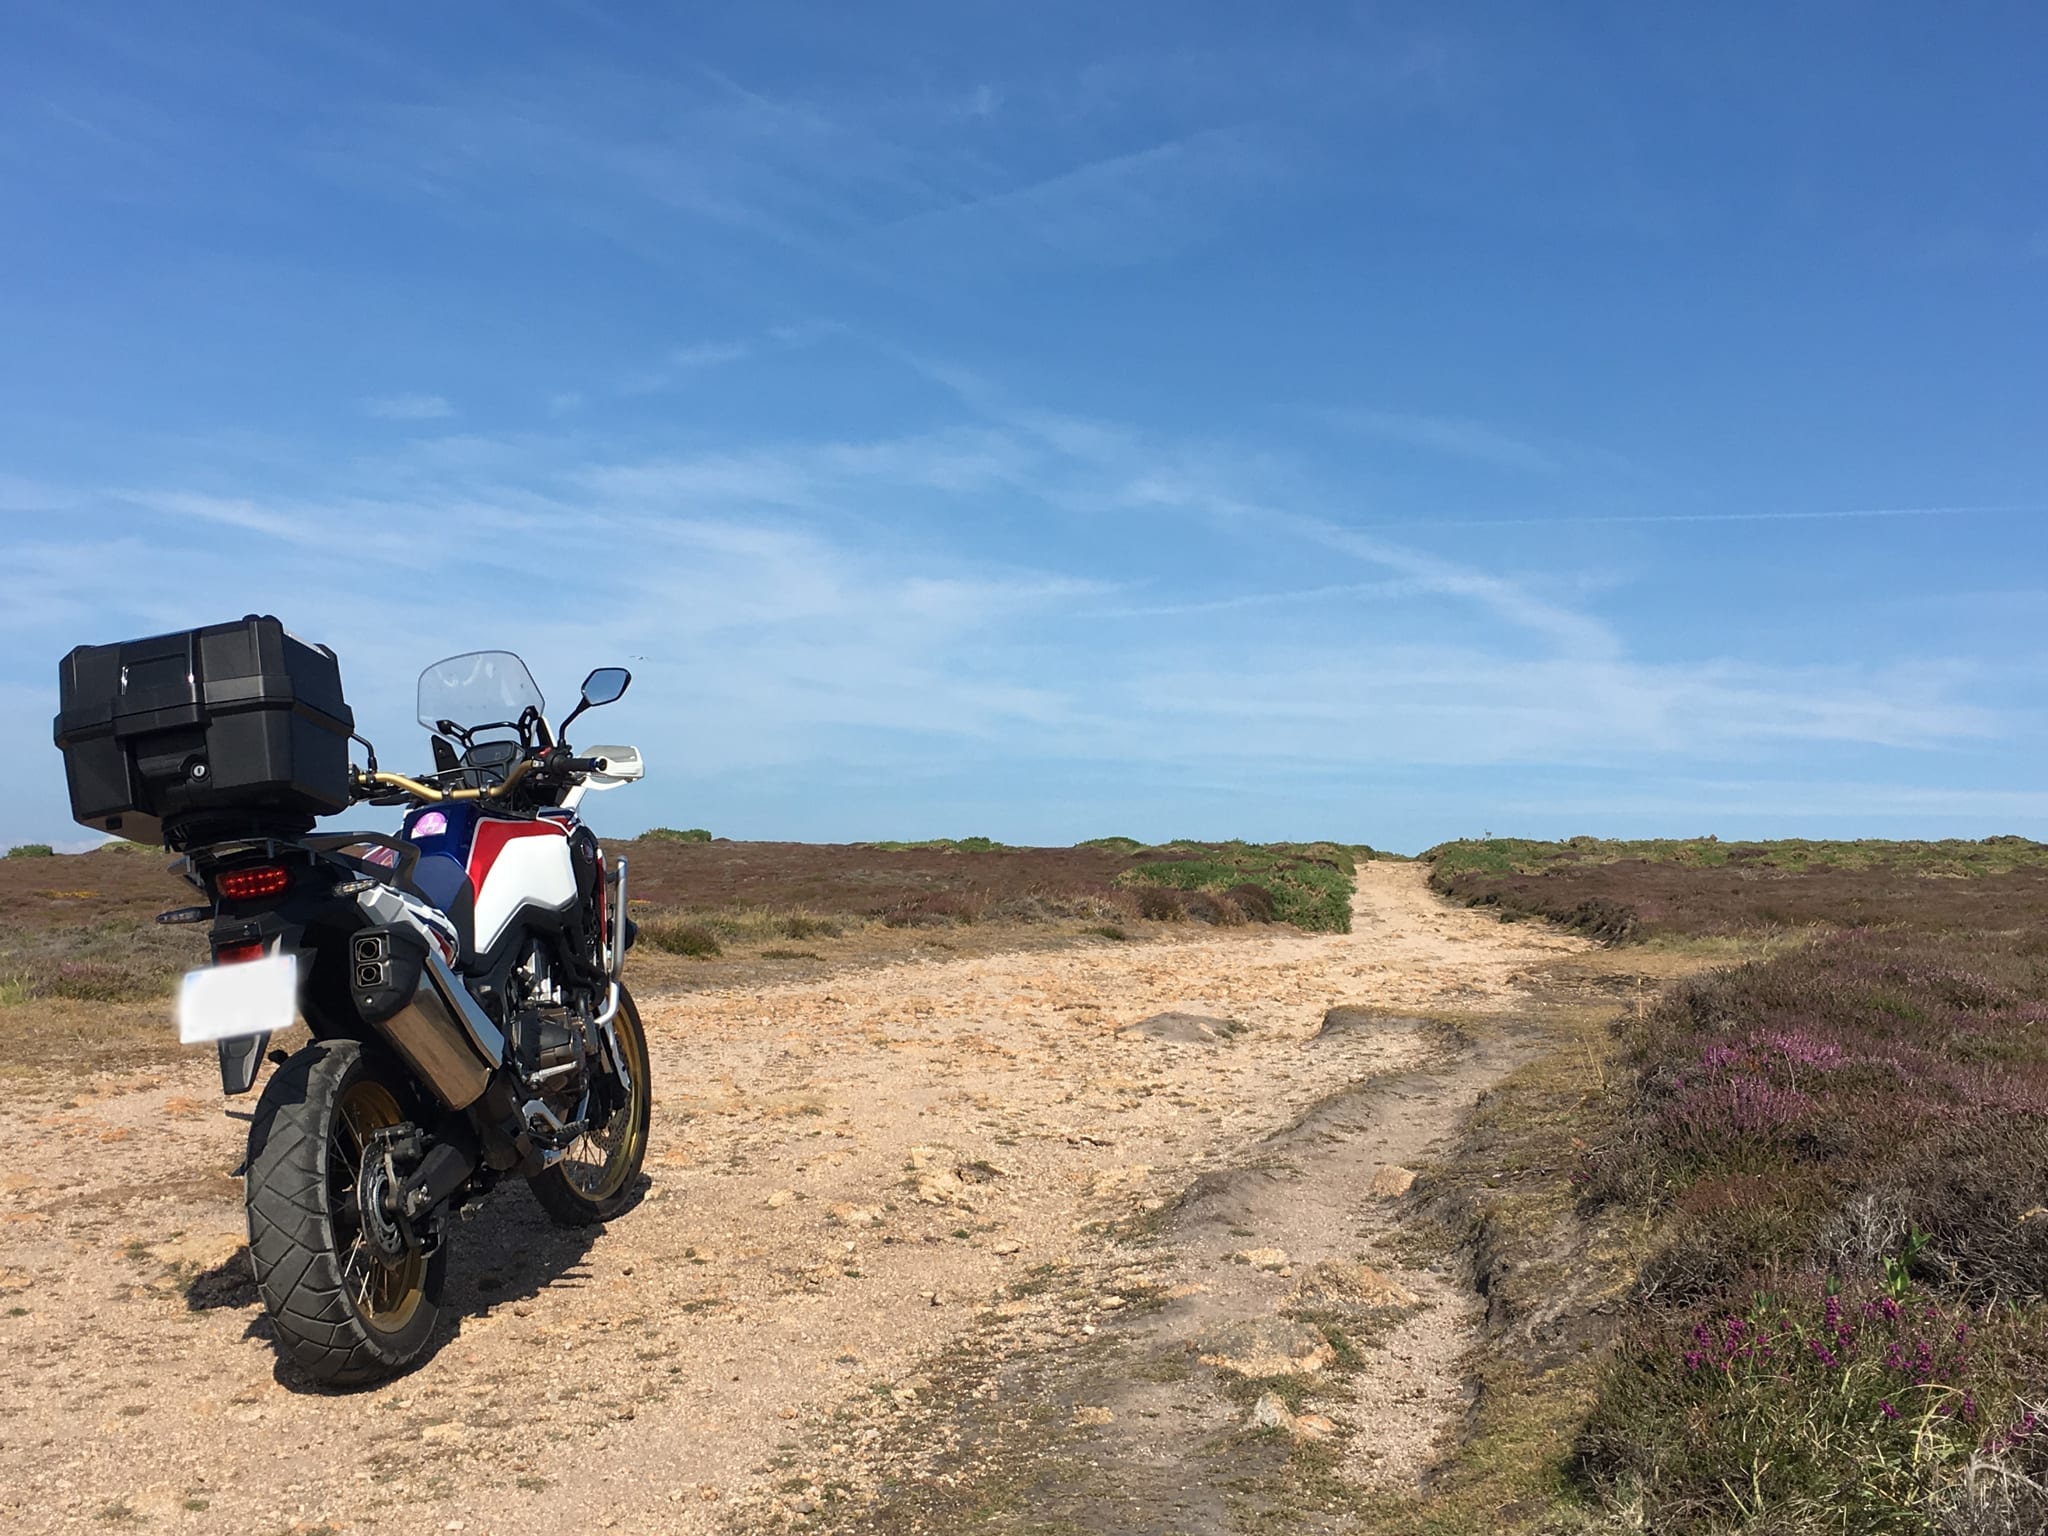 Moto maxi trail Africa Twin sur piste pendant un raid moto en off-road Europe, juin 2019